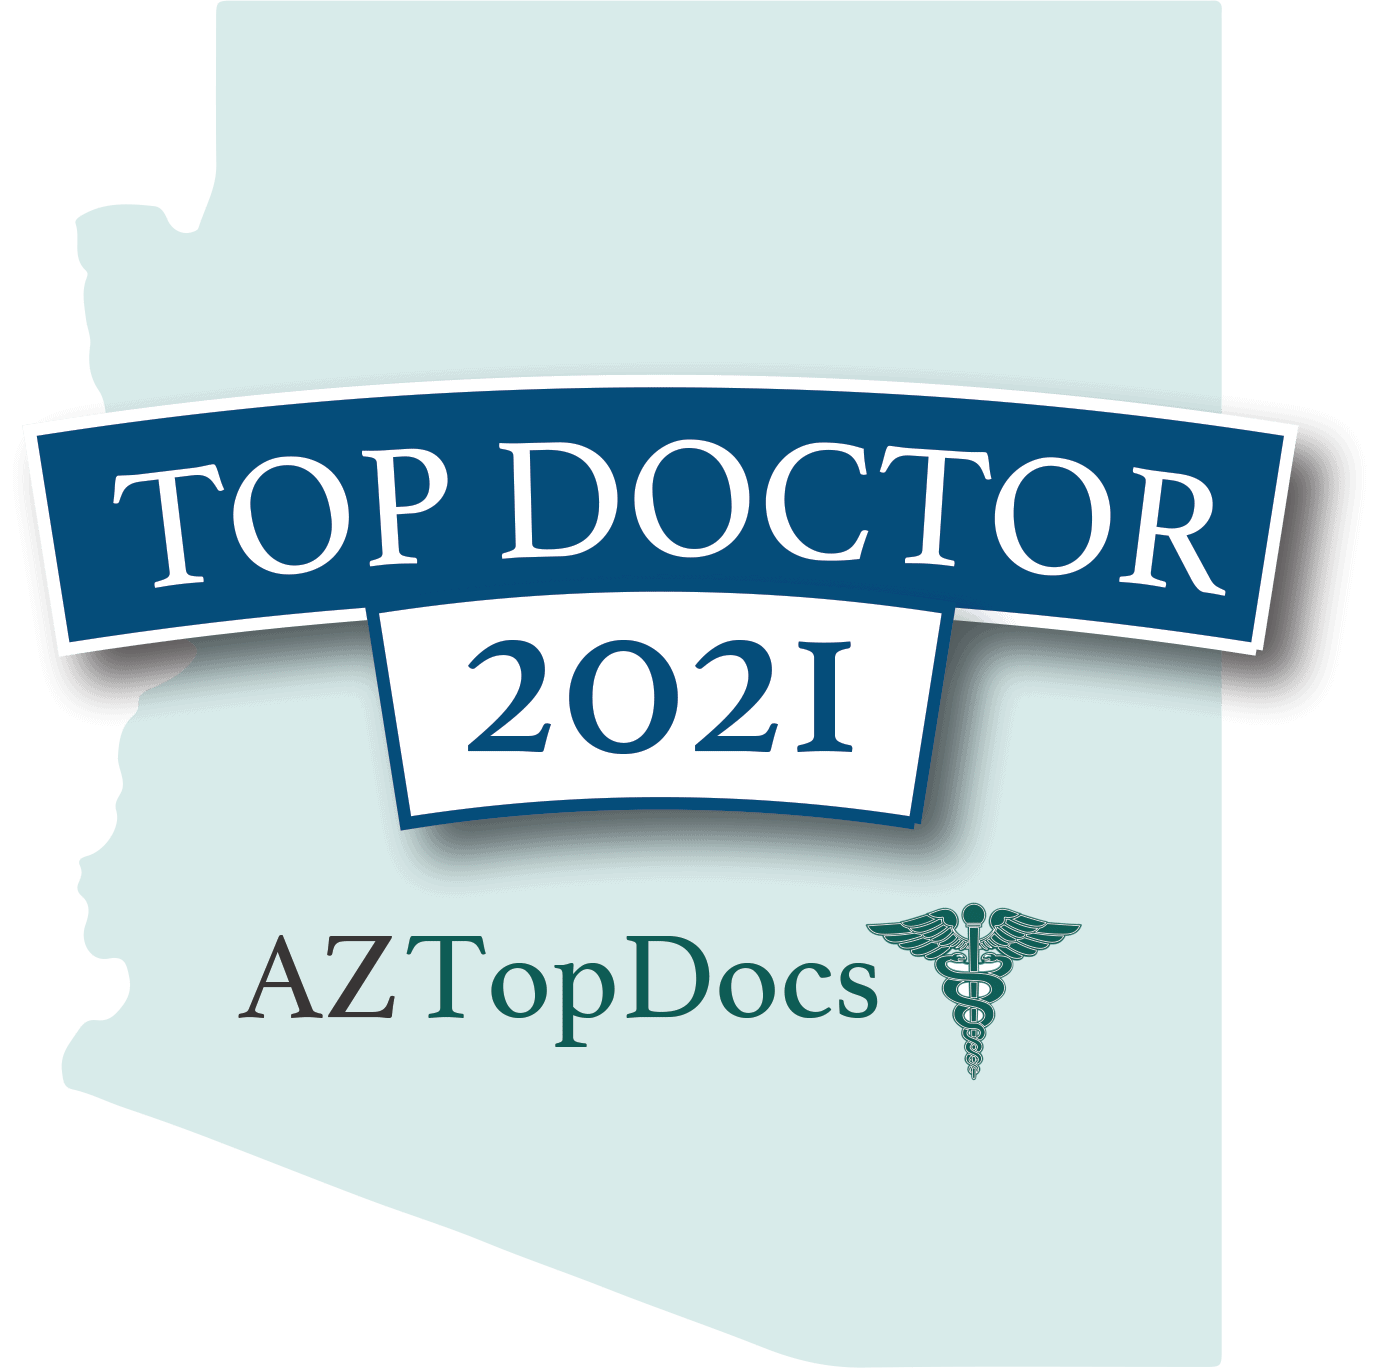 Top doctor 2021